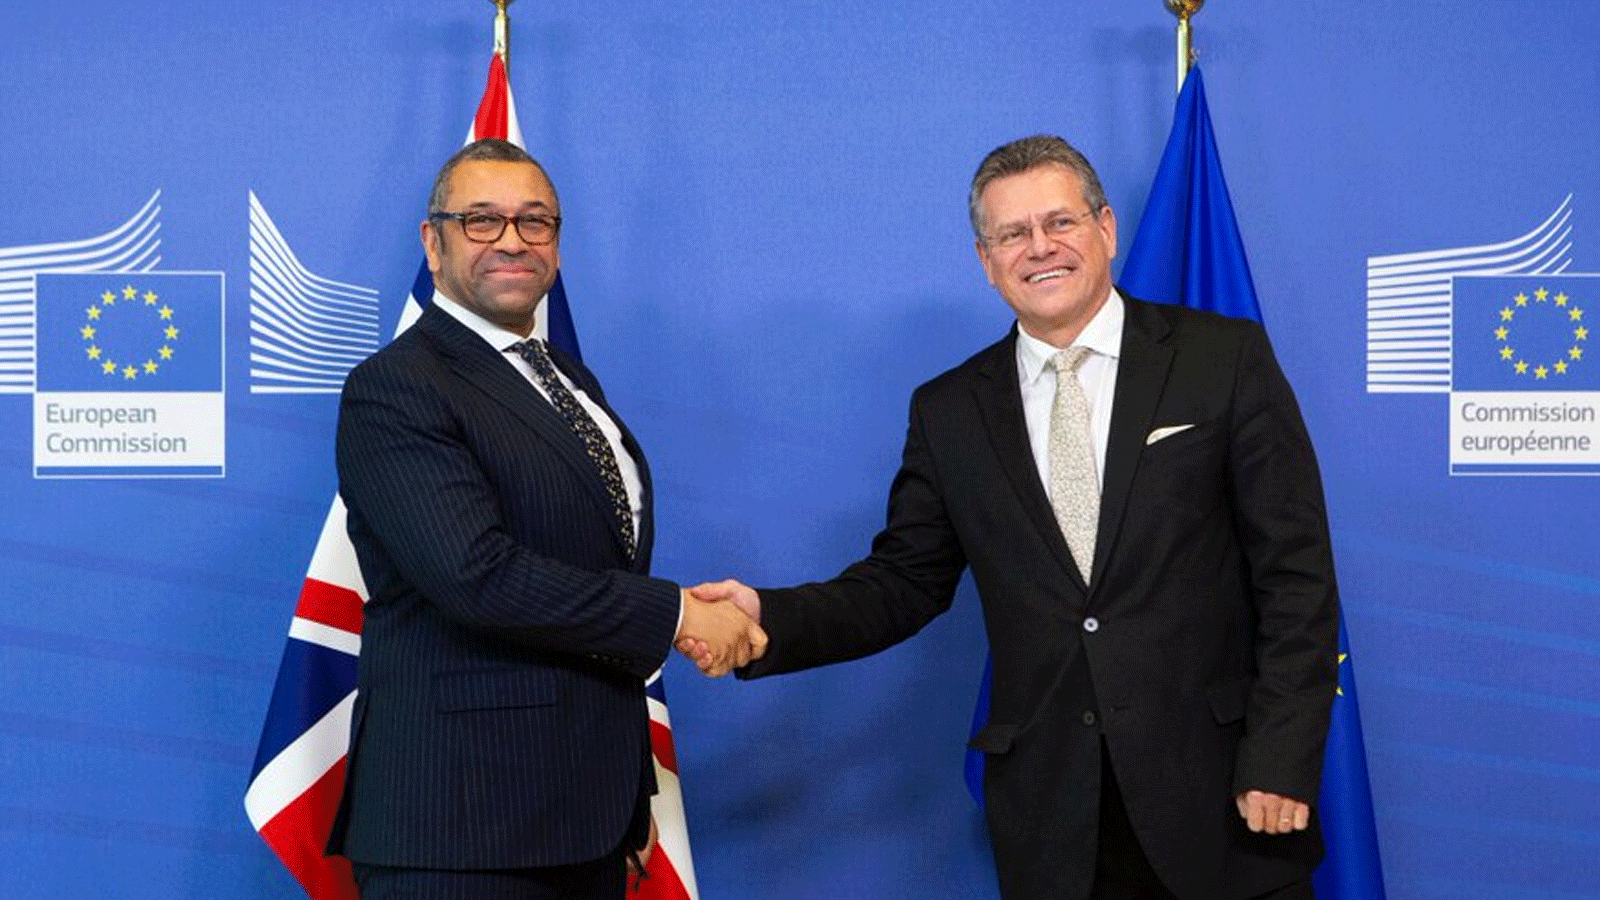 صورة تجمع كليفرلي ونائب رئيس المفوضية الأوروبية ماروش تشيفشوفيتش